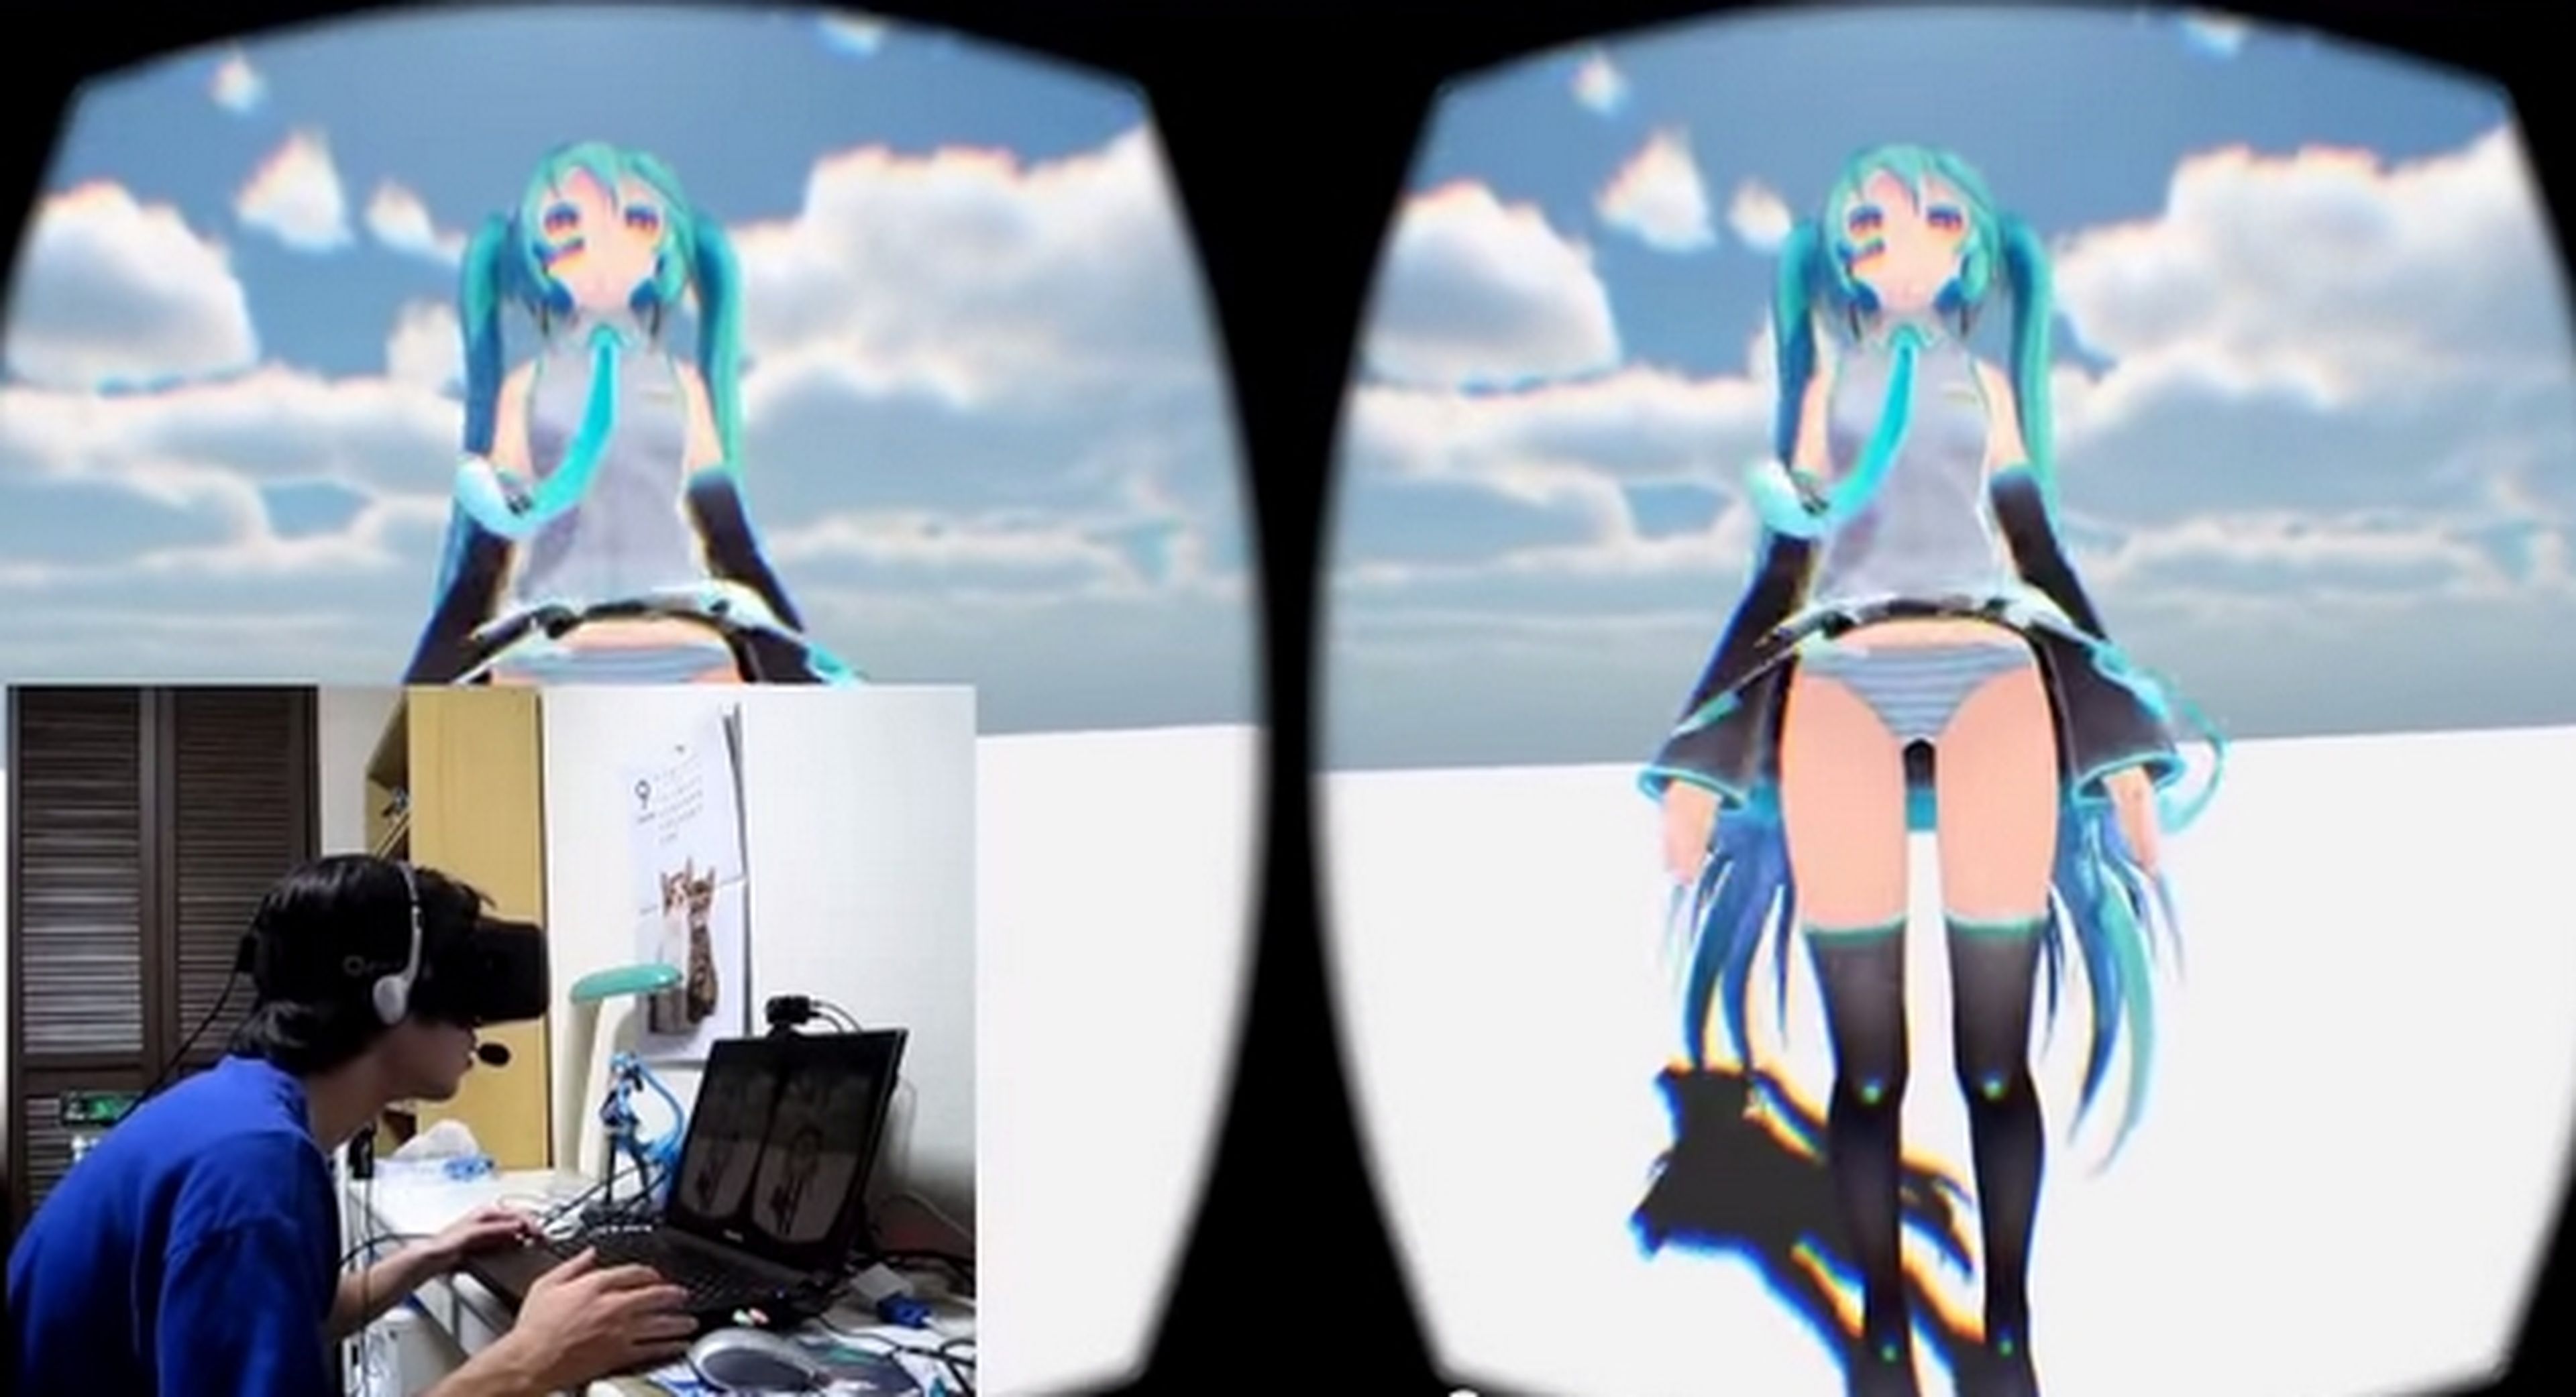 Llegan los primeros juegos eróticos a las gafas de realidad virtual Oculus Rift.